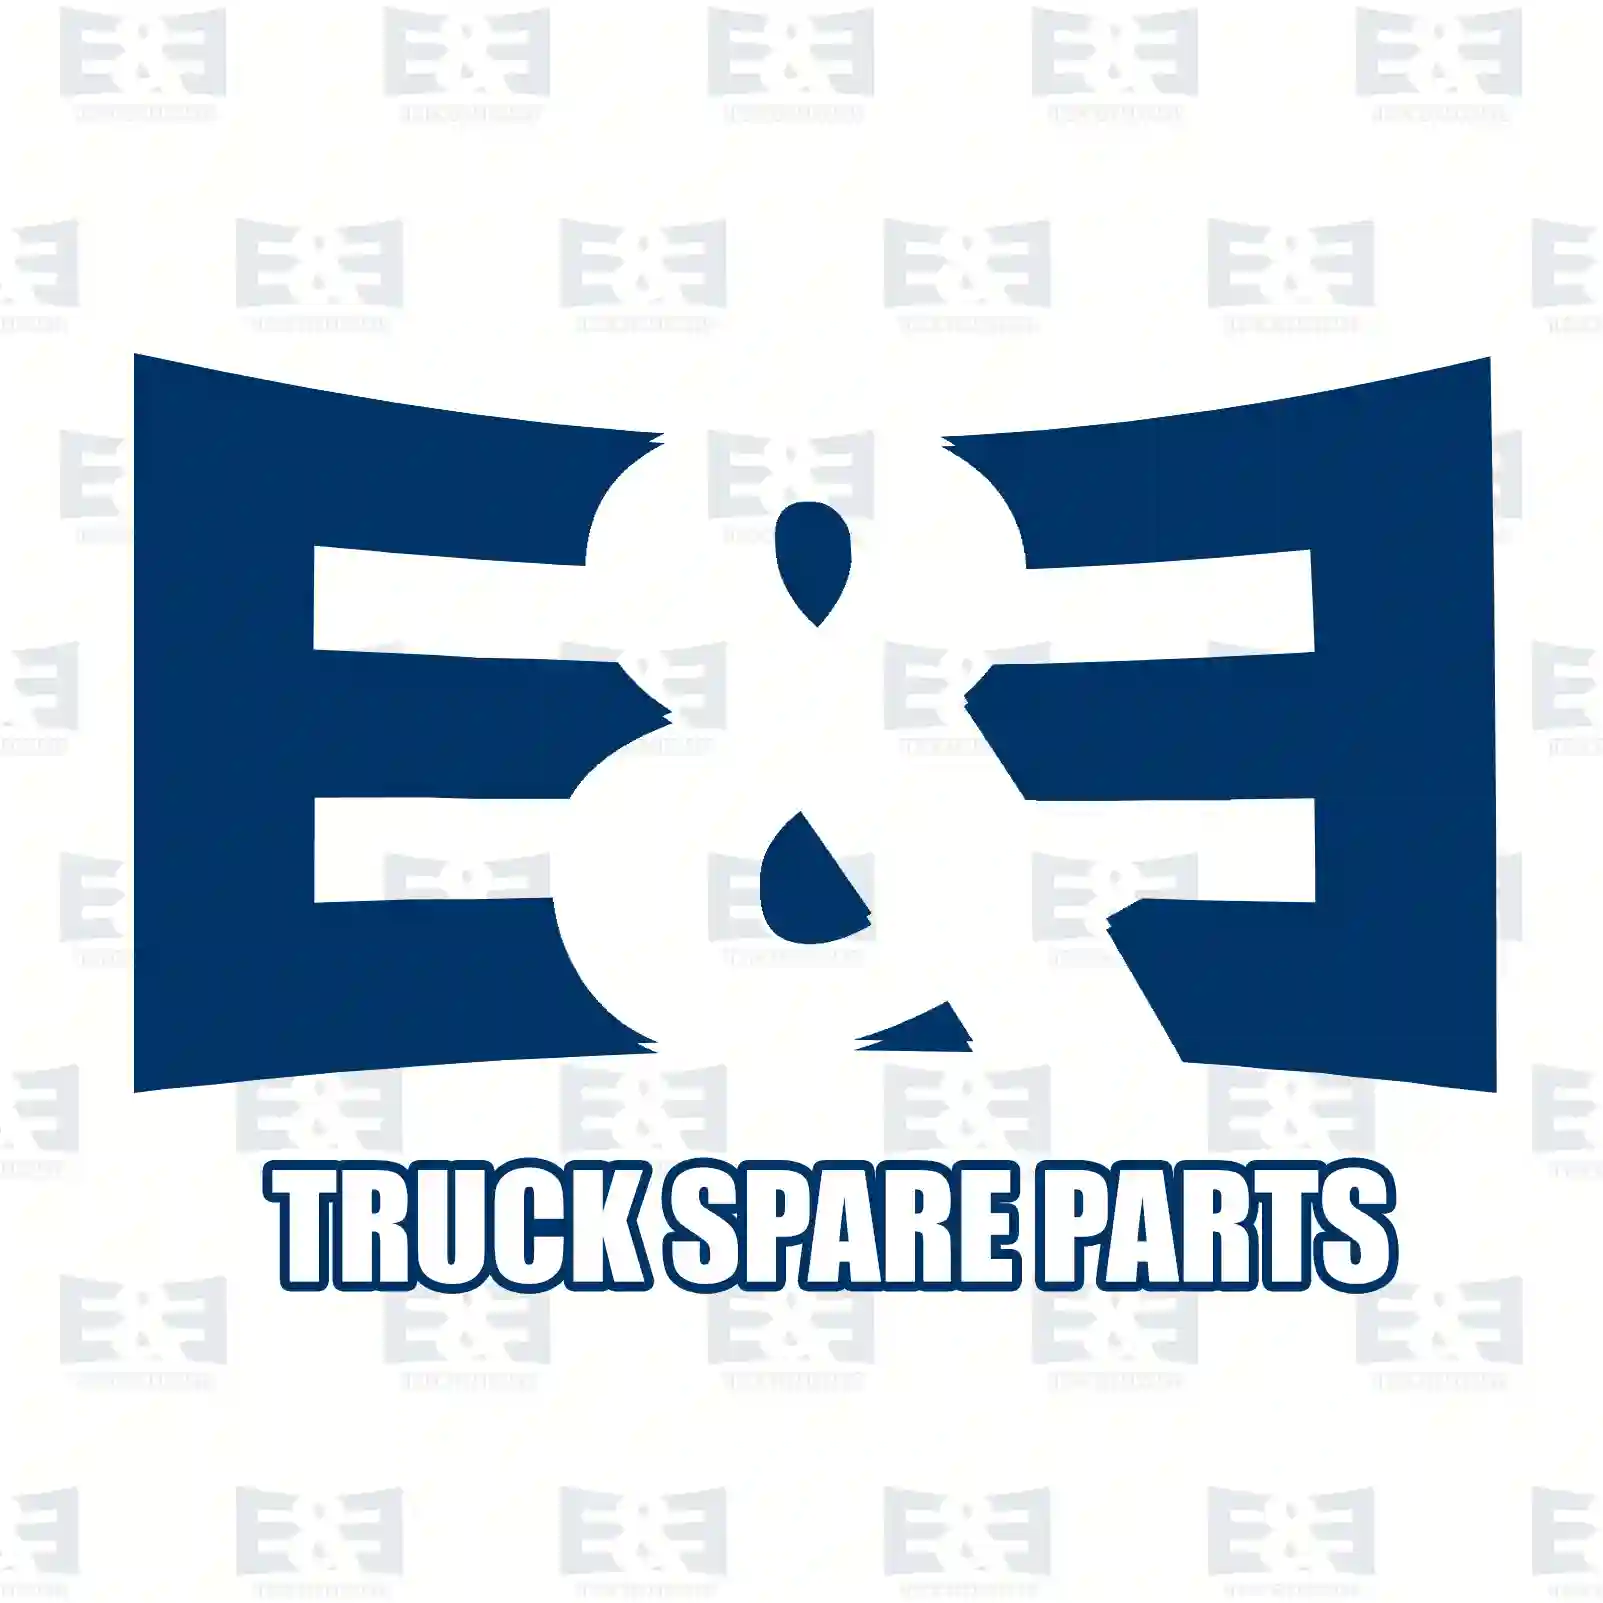 Clutch cylinder, 2E2288690, N1011010067, 0012957106, 042310200 ||  2E2288690 E&E Truck Spare Parts | Truck Spare Parts, Auotomotive Spare Parts Clutch cylinder, 2E2288690, N1011010067, 0012957106, 042310200 ||  2E2288690 E&E Truck Spare Parts | Truck Spare Parts, Auotomotive Spare Parts